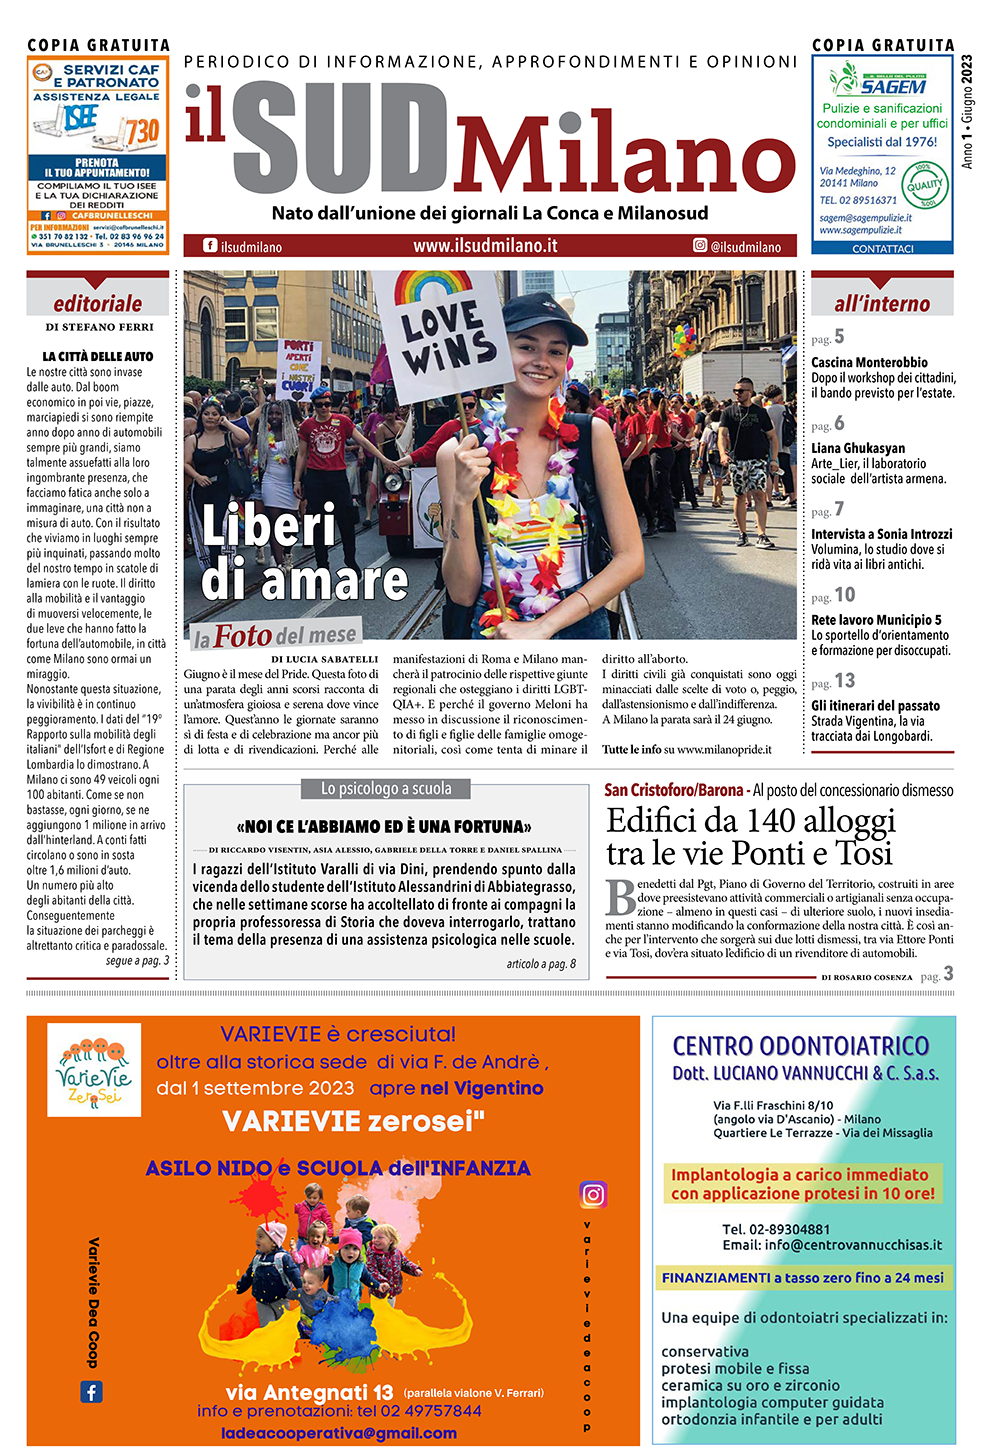 Prima pagina del giornale il SUD Milano di giugno 2023